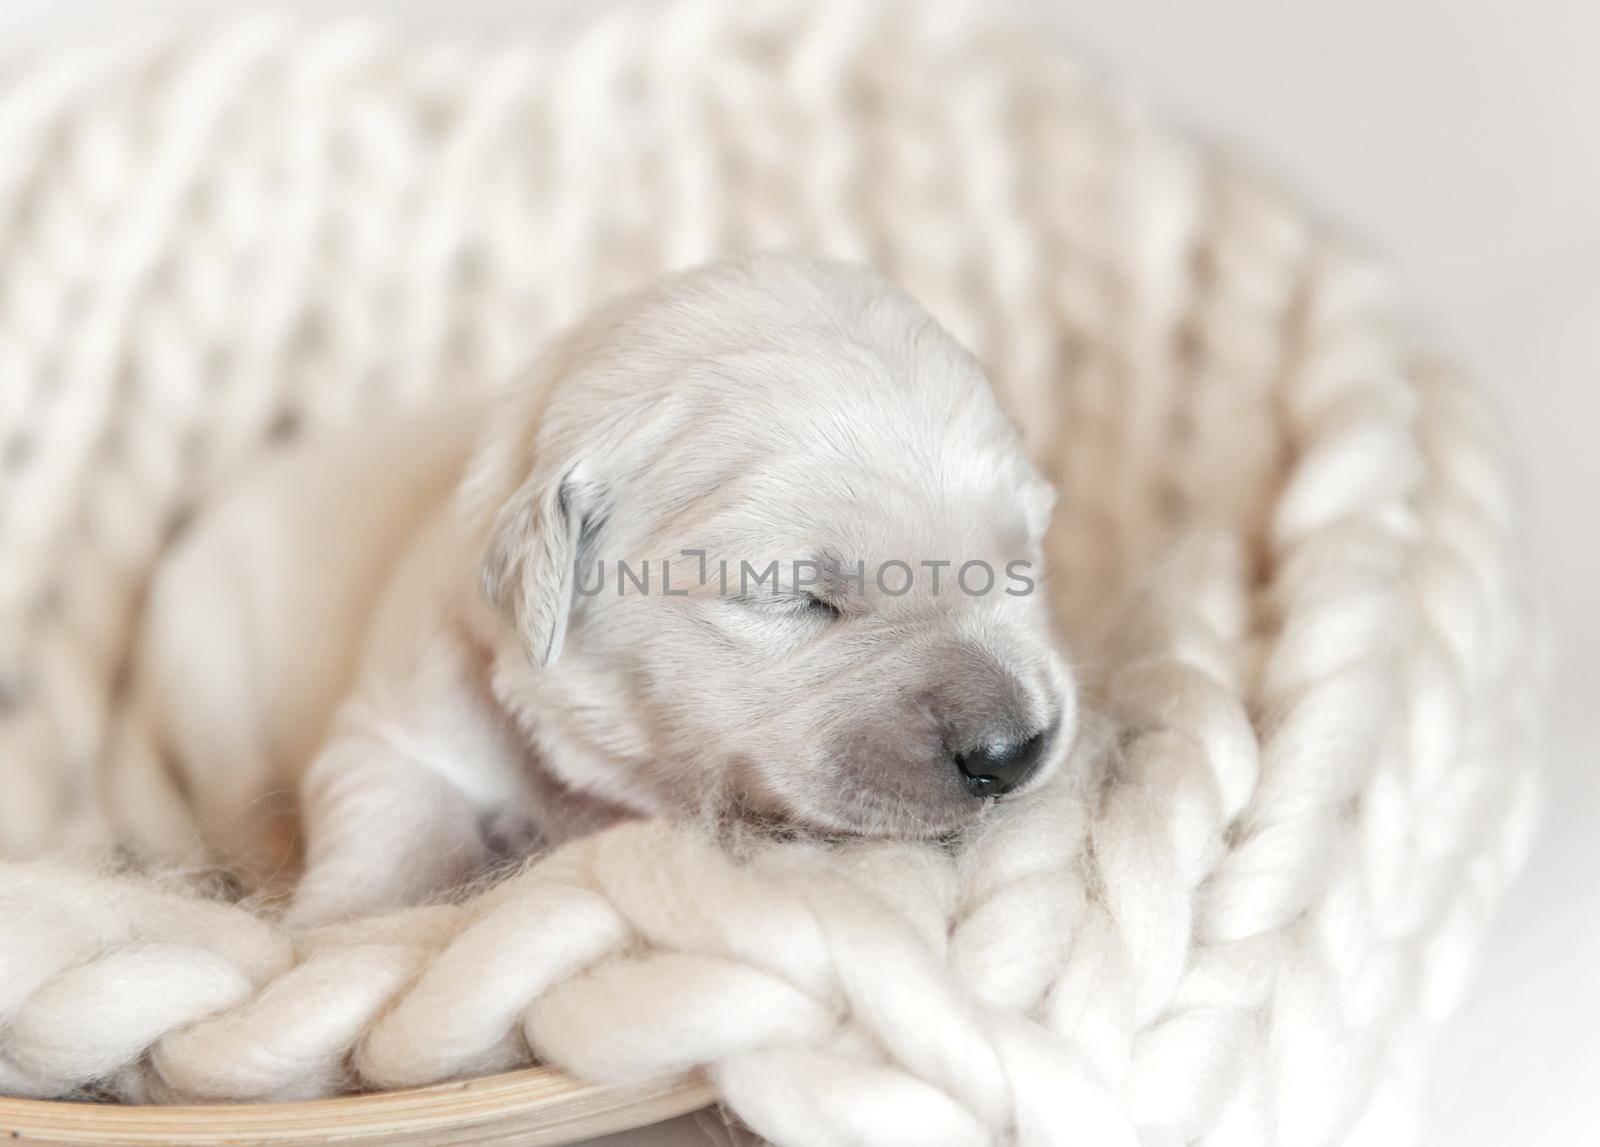 Closeup of cute fluffy newborn golden retriever puppy sleeping on the woolen knitted blanket